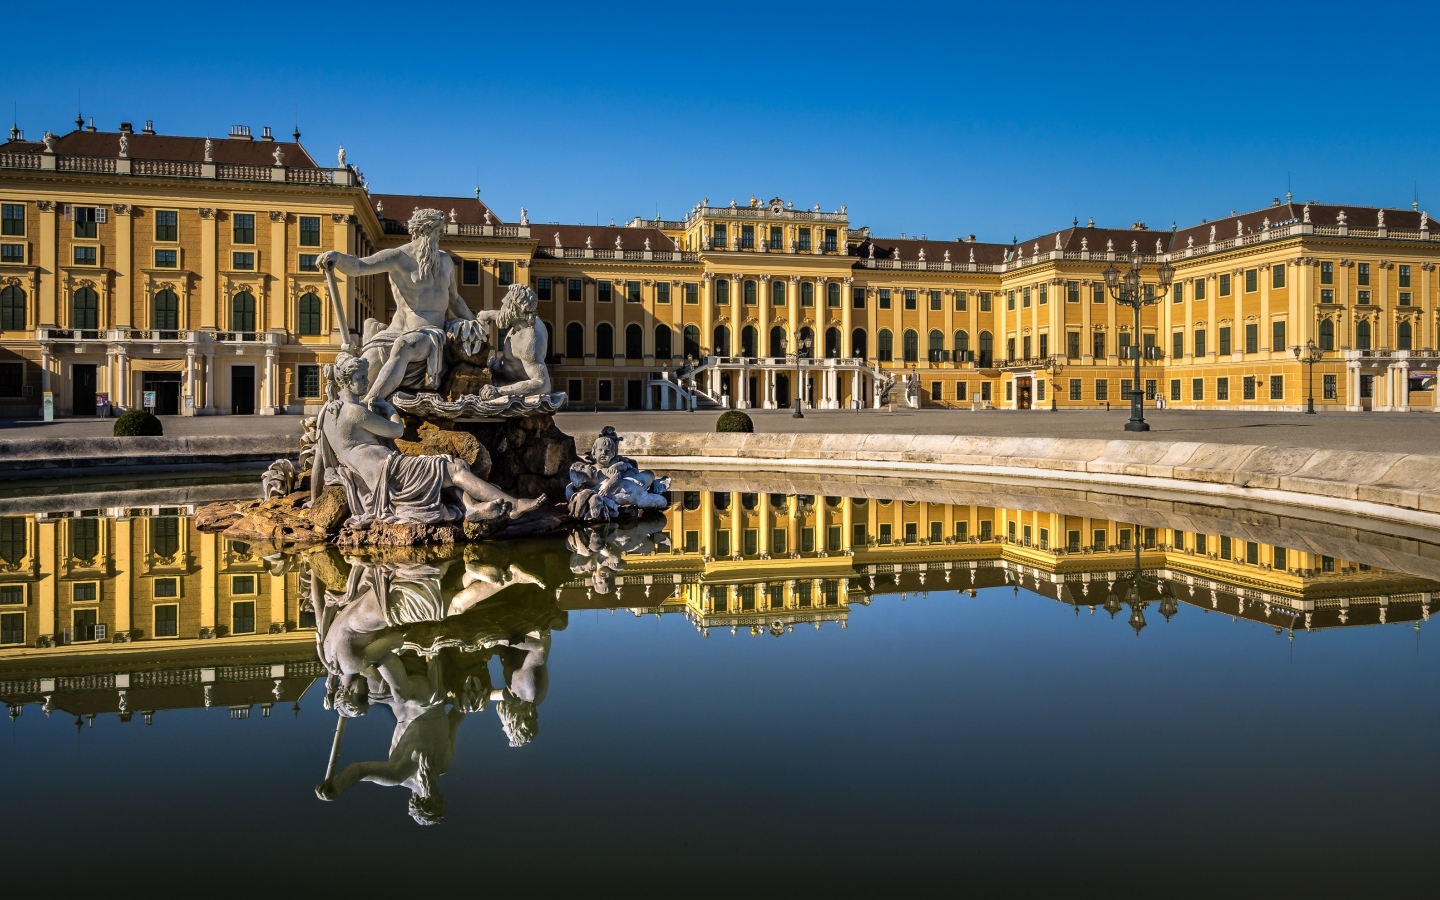 Schonbrunn Palace View for 1440 x 900 widescreen resolution